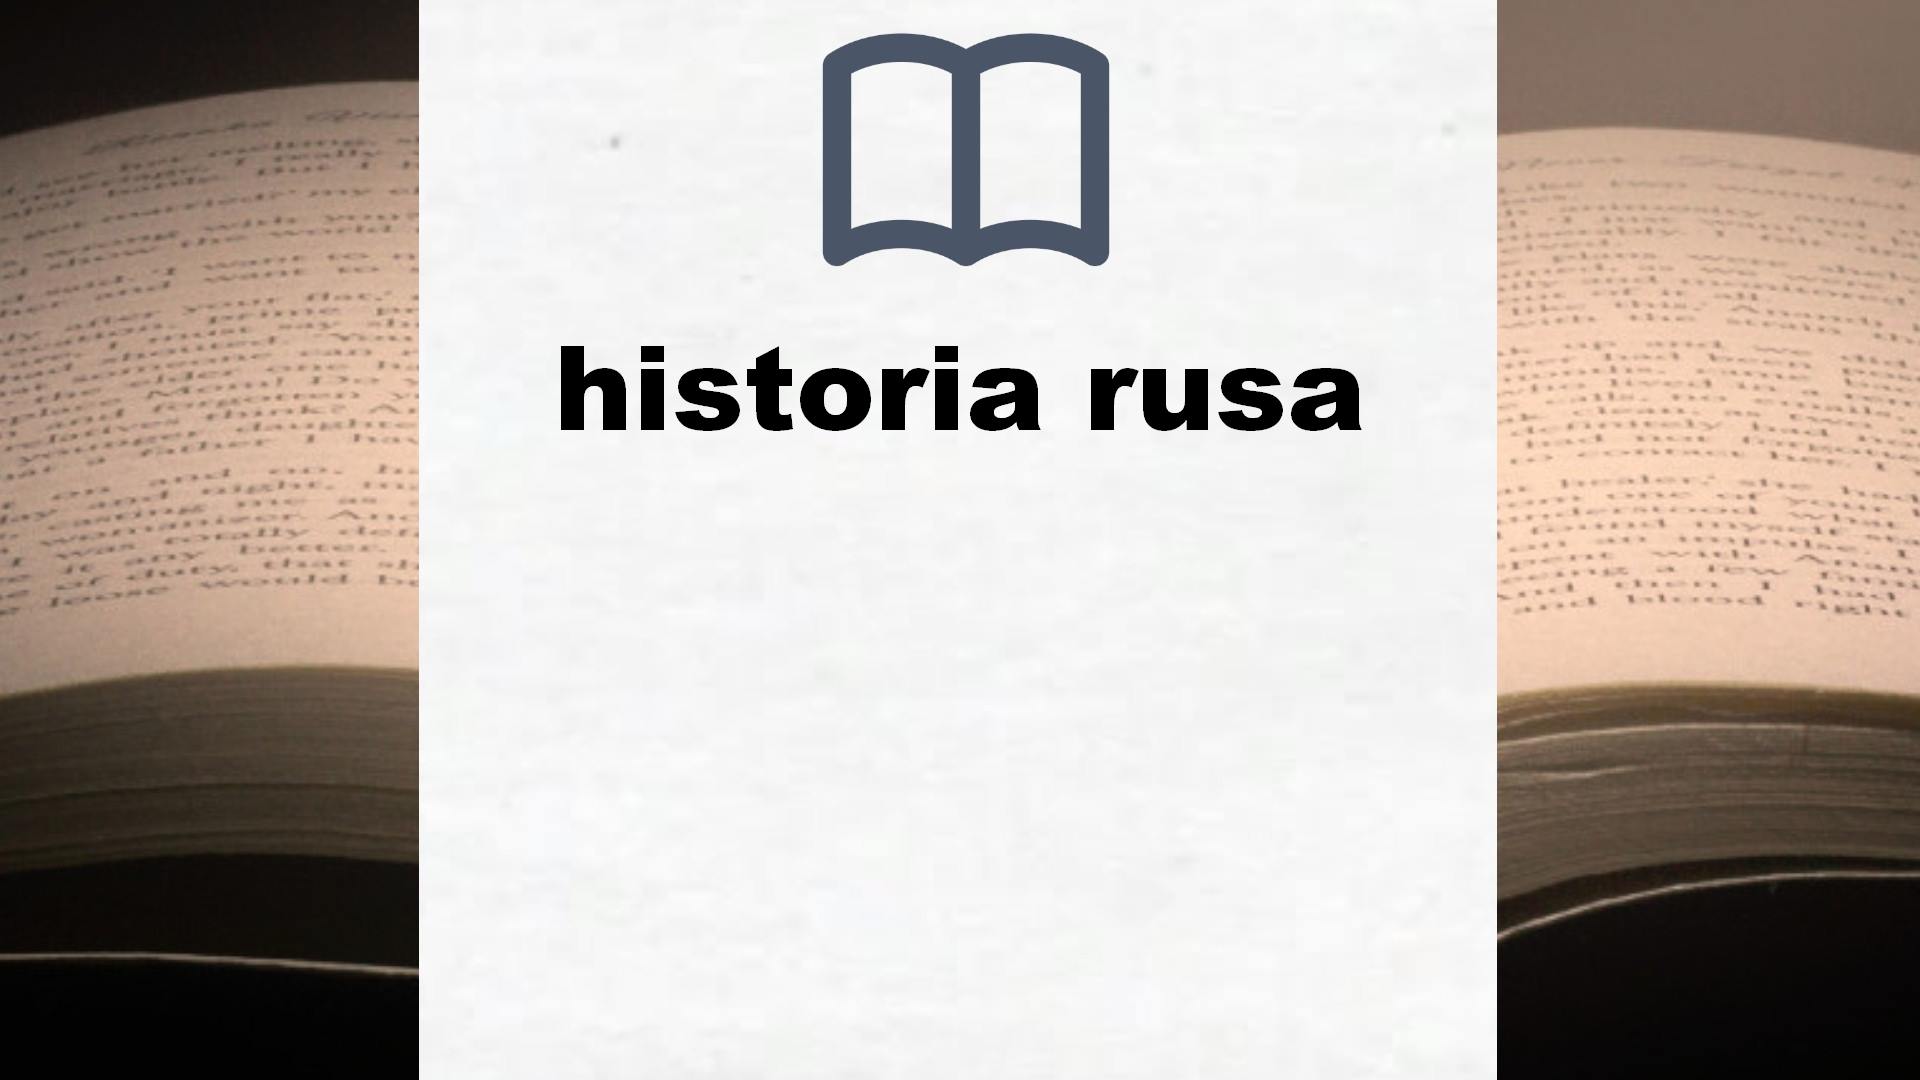 Libros sobre historia rusa